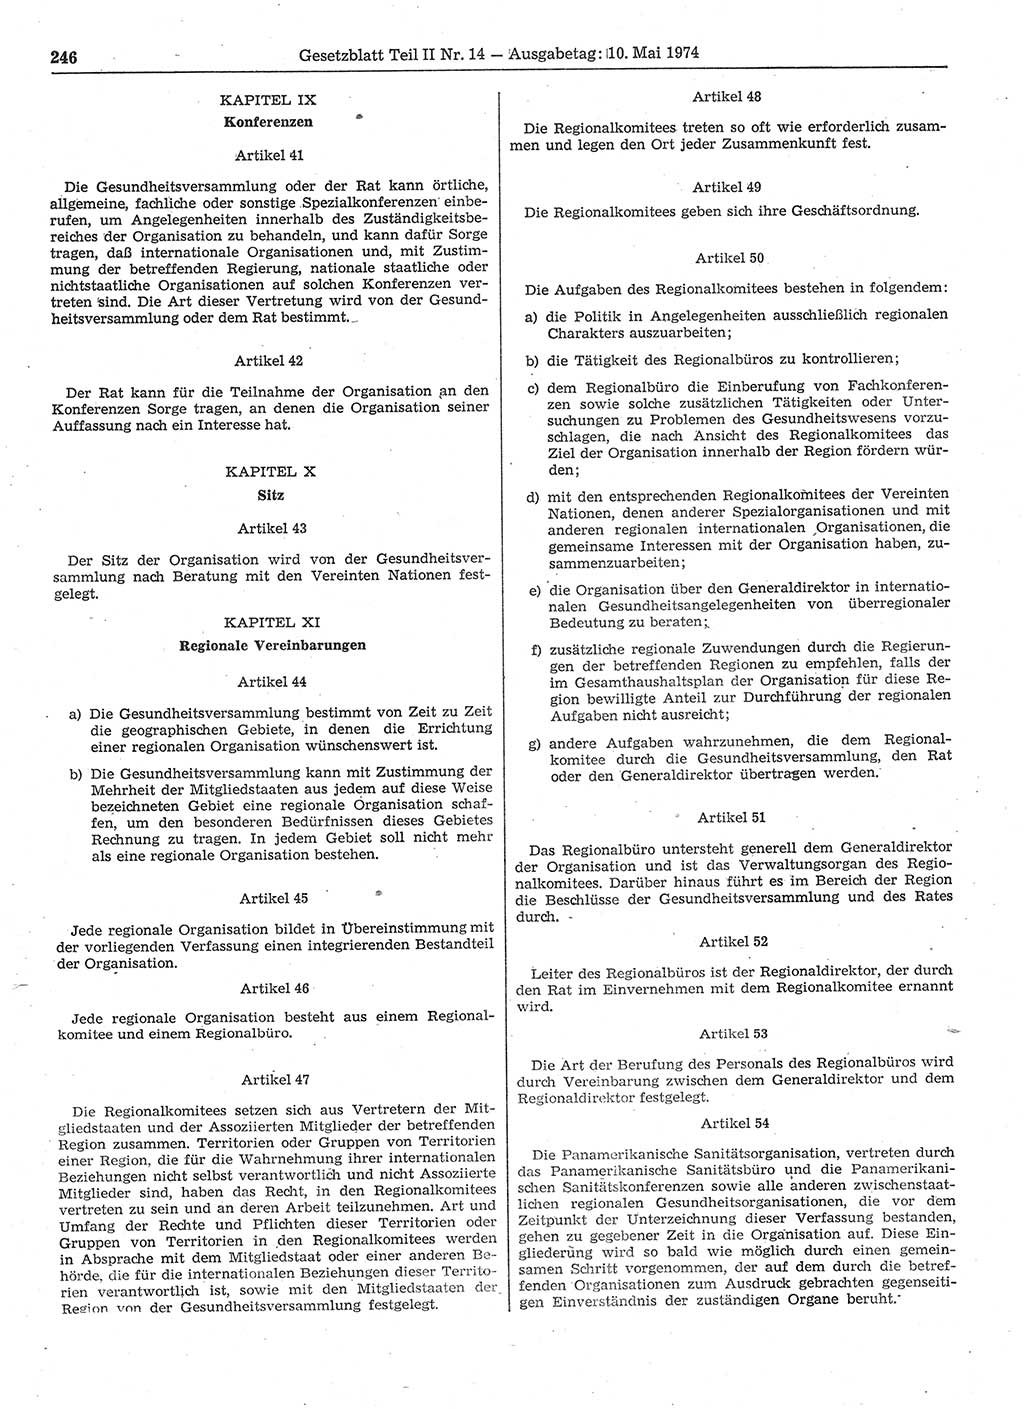 Gesetzblatt (GBl.) der Deutschen Demokratischen Republik (DDR) Teil ⅠⅠ 1974, Seite 246 (GBl. DDR ⅠⅠ 1974, S. 246)